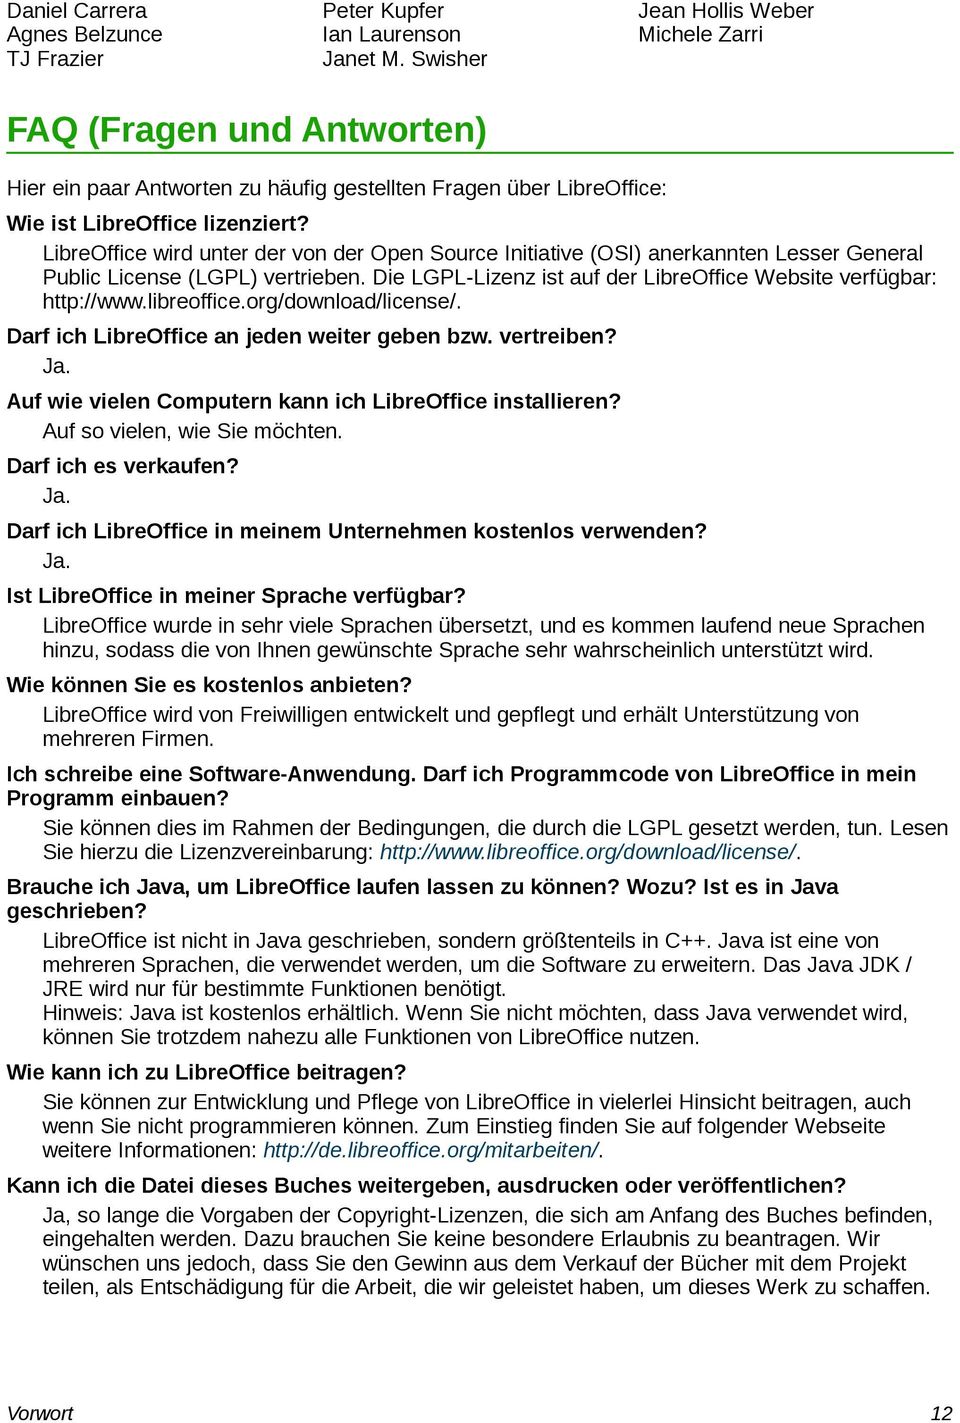 LibreOffice wird unter der von der Open Source Initiative (OSI) anerkannten Lesser General Public License (LGPL) vertrieben. Die LGPL-Lizenz ist auf der LibreOffice Website verfügbar: http://www.